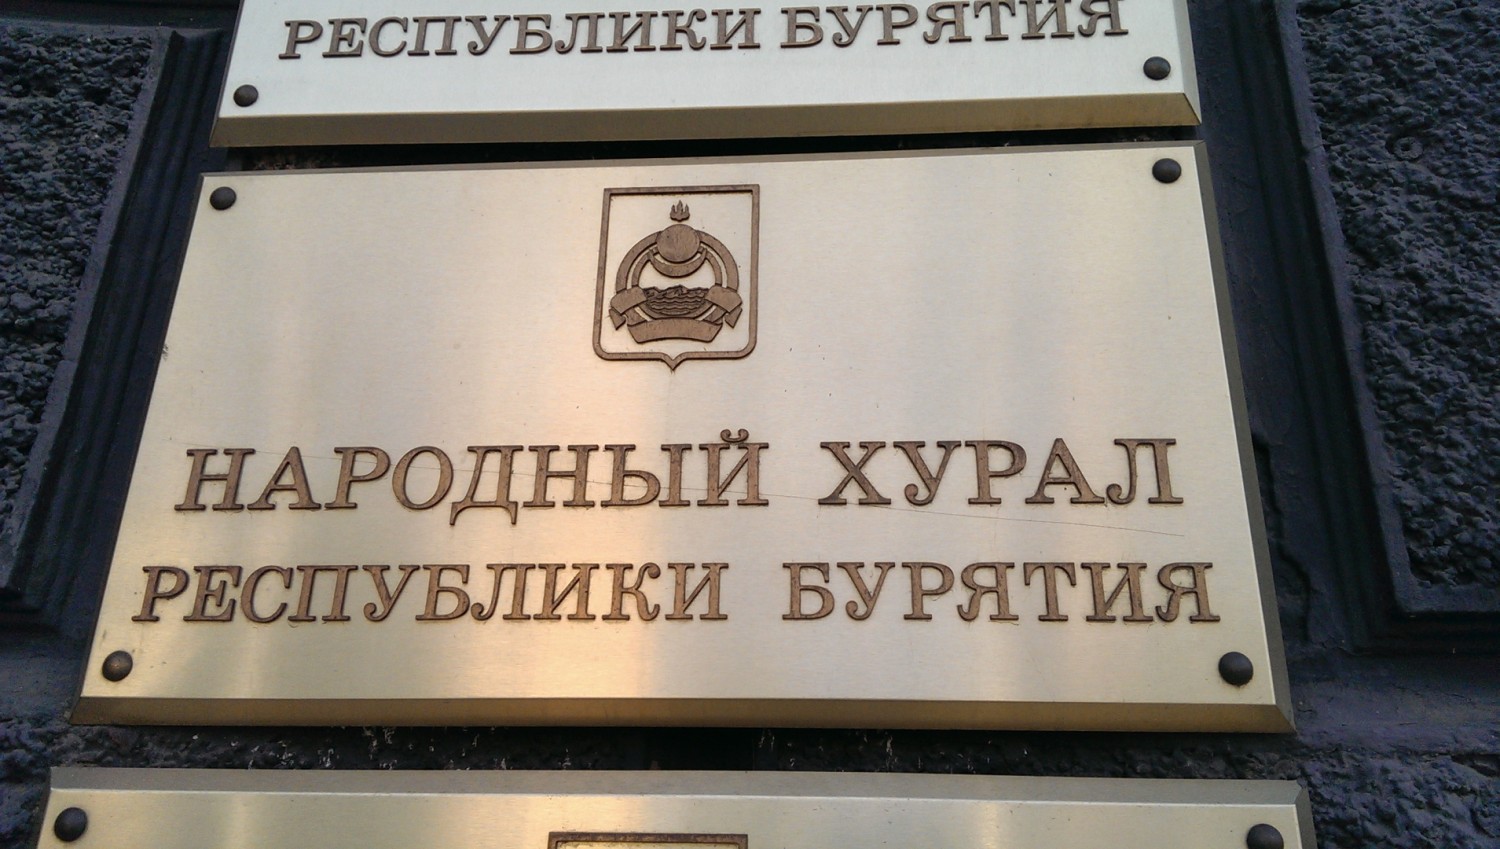 Фото Комиссия по этике Народного Хурала Бурятии даст оценку вице-спикеру Жамбалову по смертельному ДТП